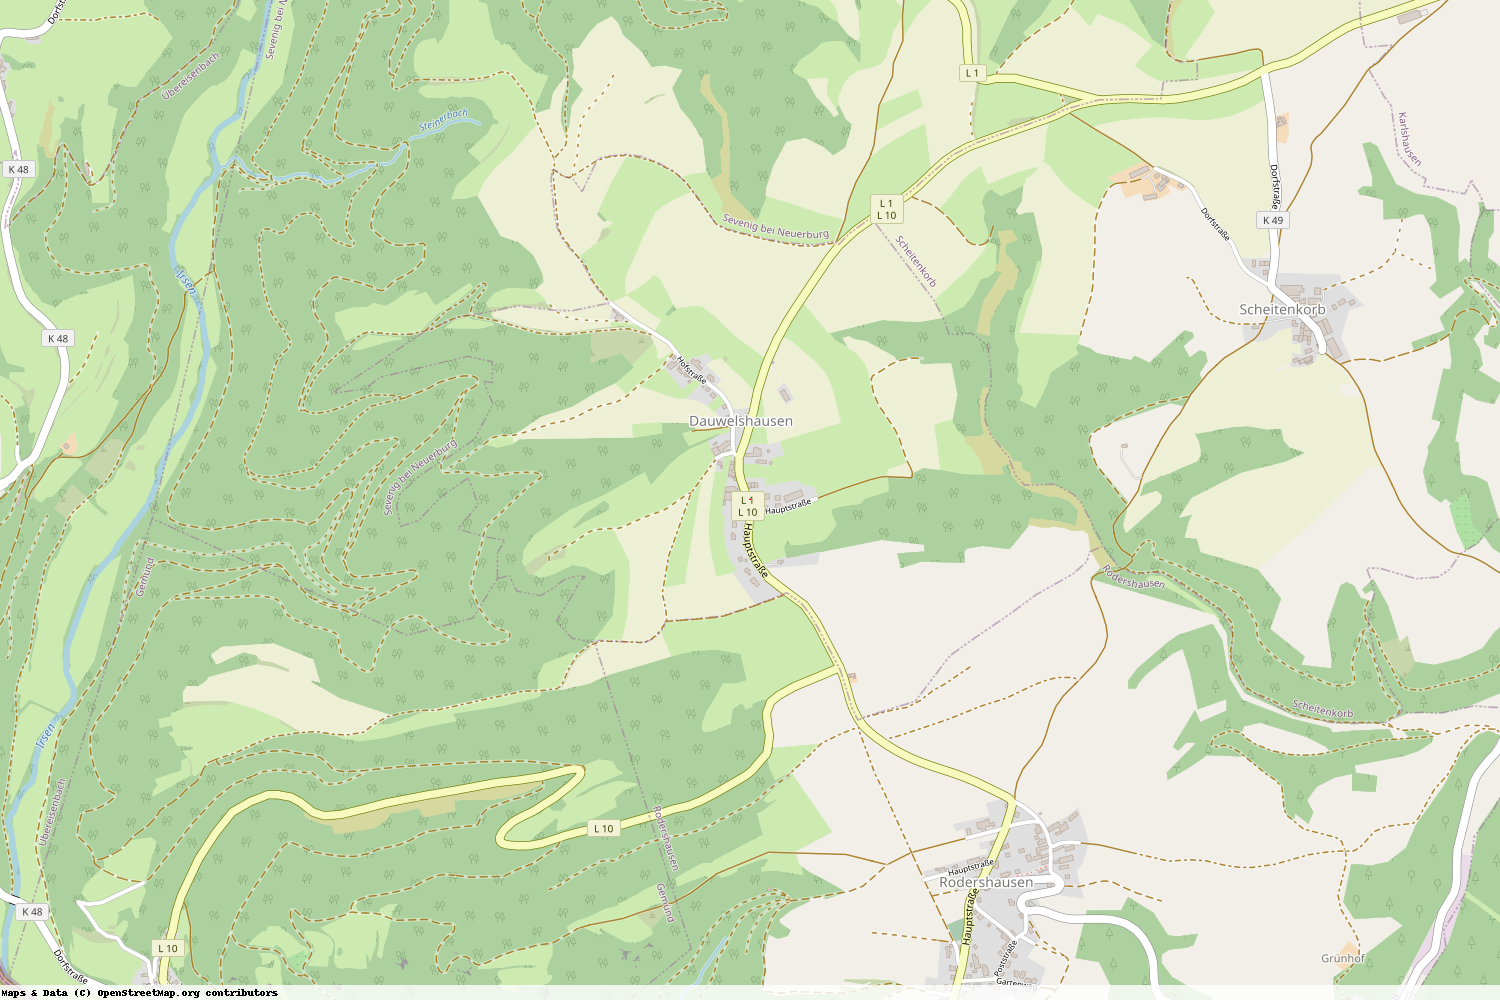 Ist gerade Stromausfall in Rheinland-Pfalz - Eifelkreis Bitburg-Prüm - Dauwelshausen?